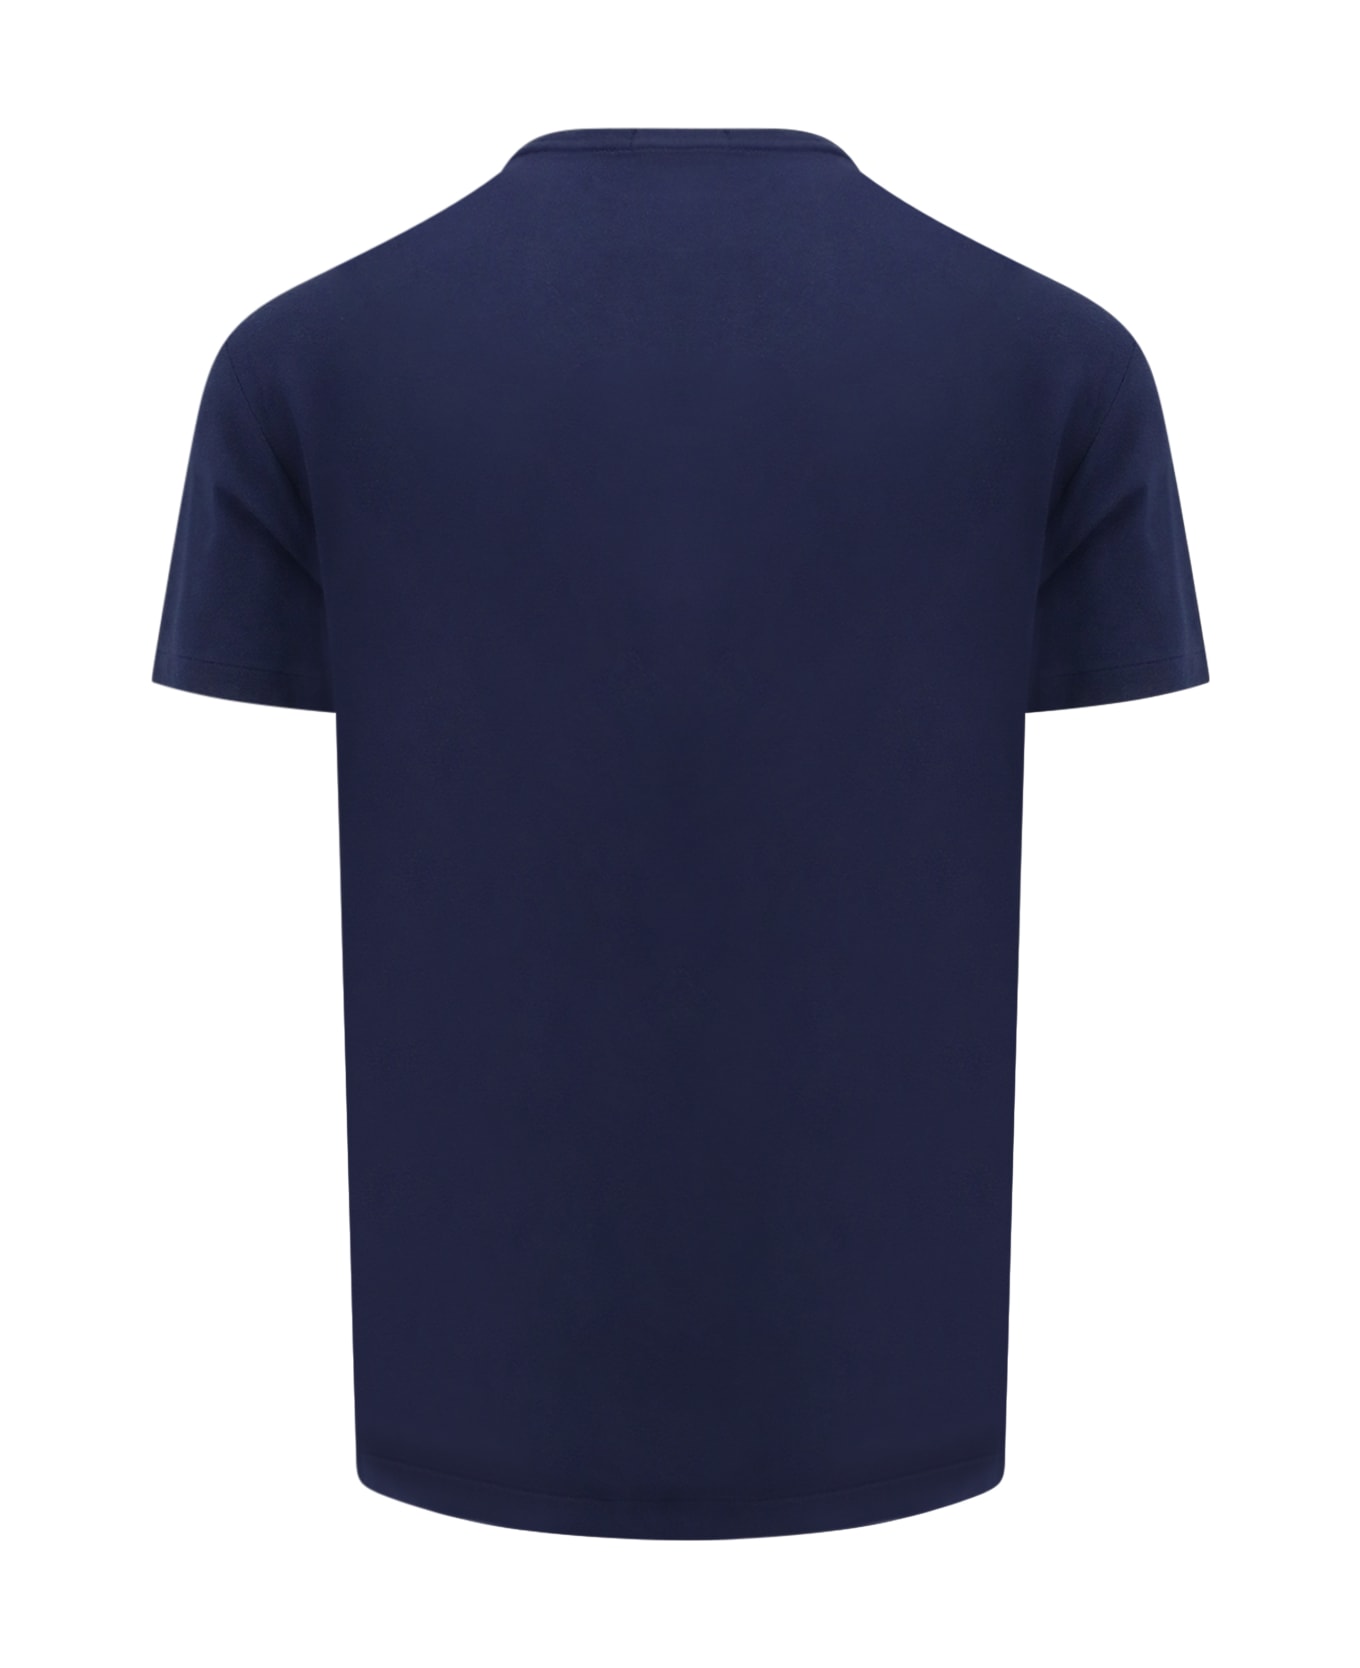 Polo Ralph Lauren T-shirt - Blu